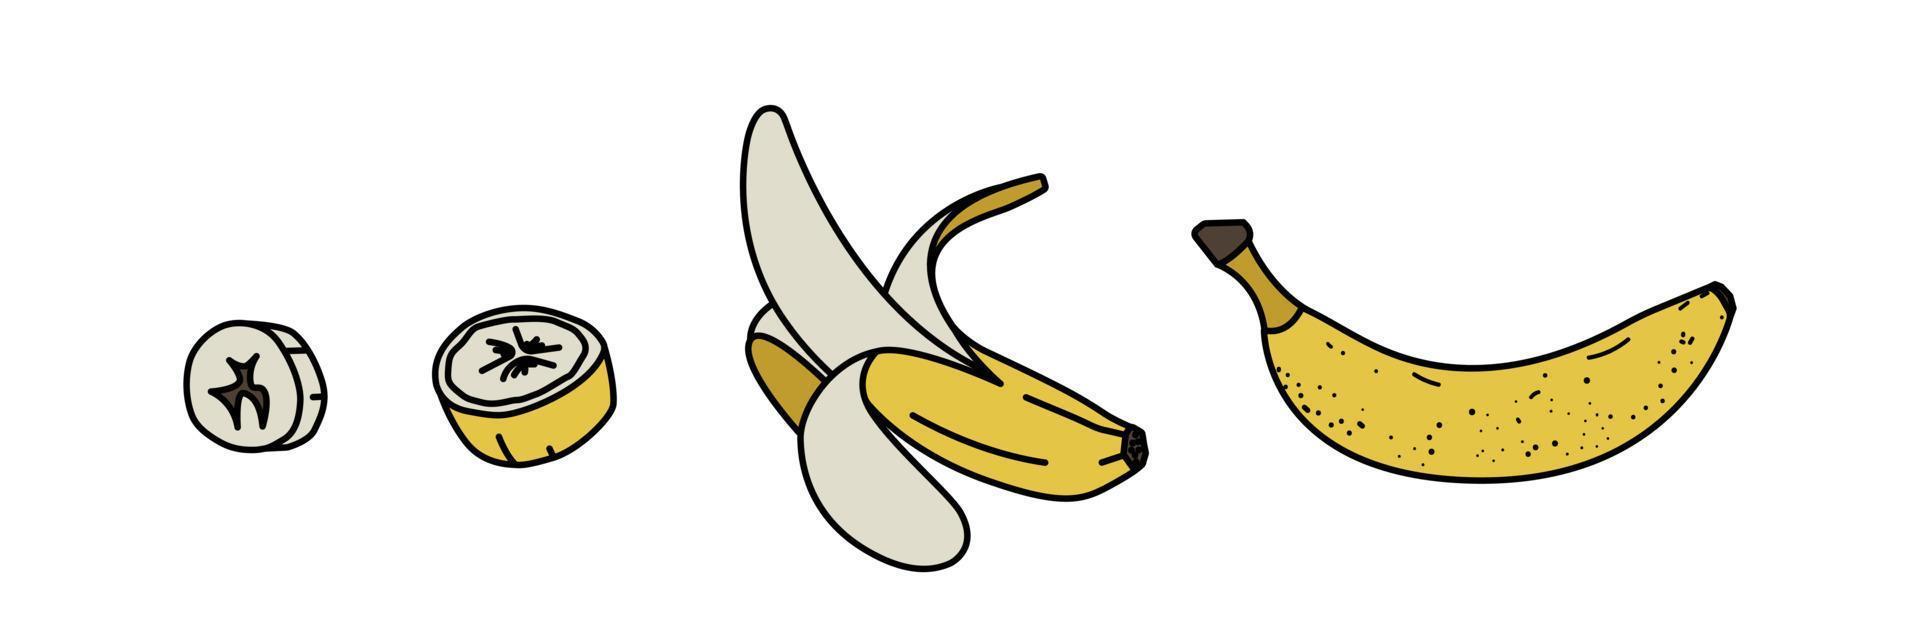 skiss bananer set. fruktklasar, halvskalade, öppnade och skurna bananer. platt stil. vektor illustration på vit bakgrund